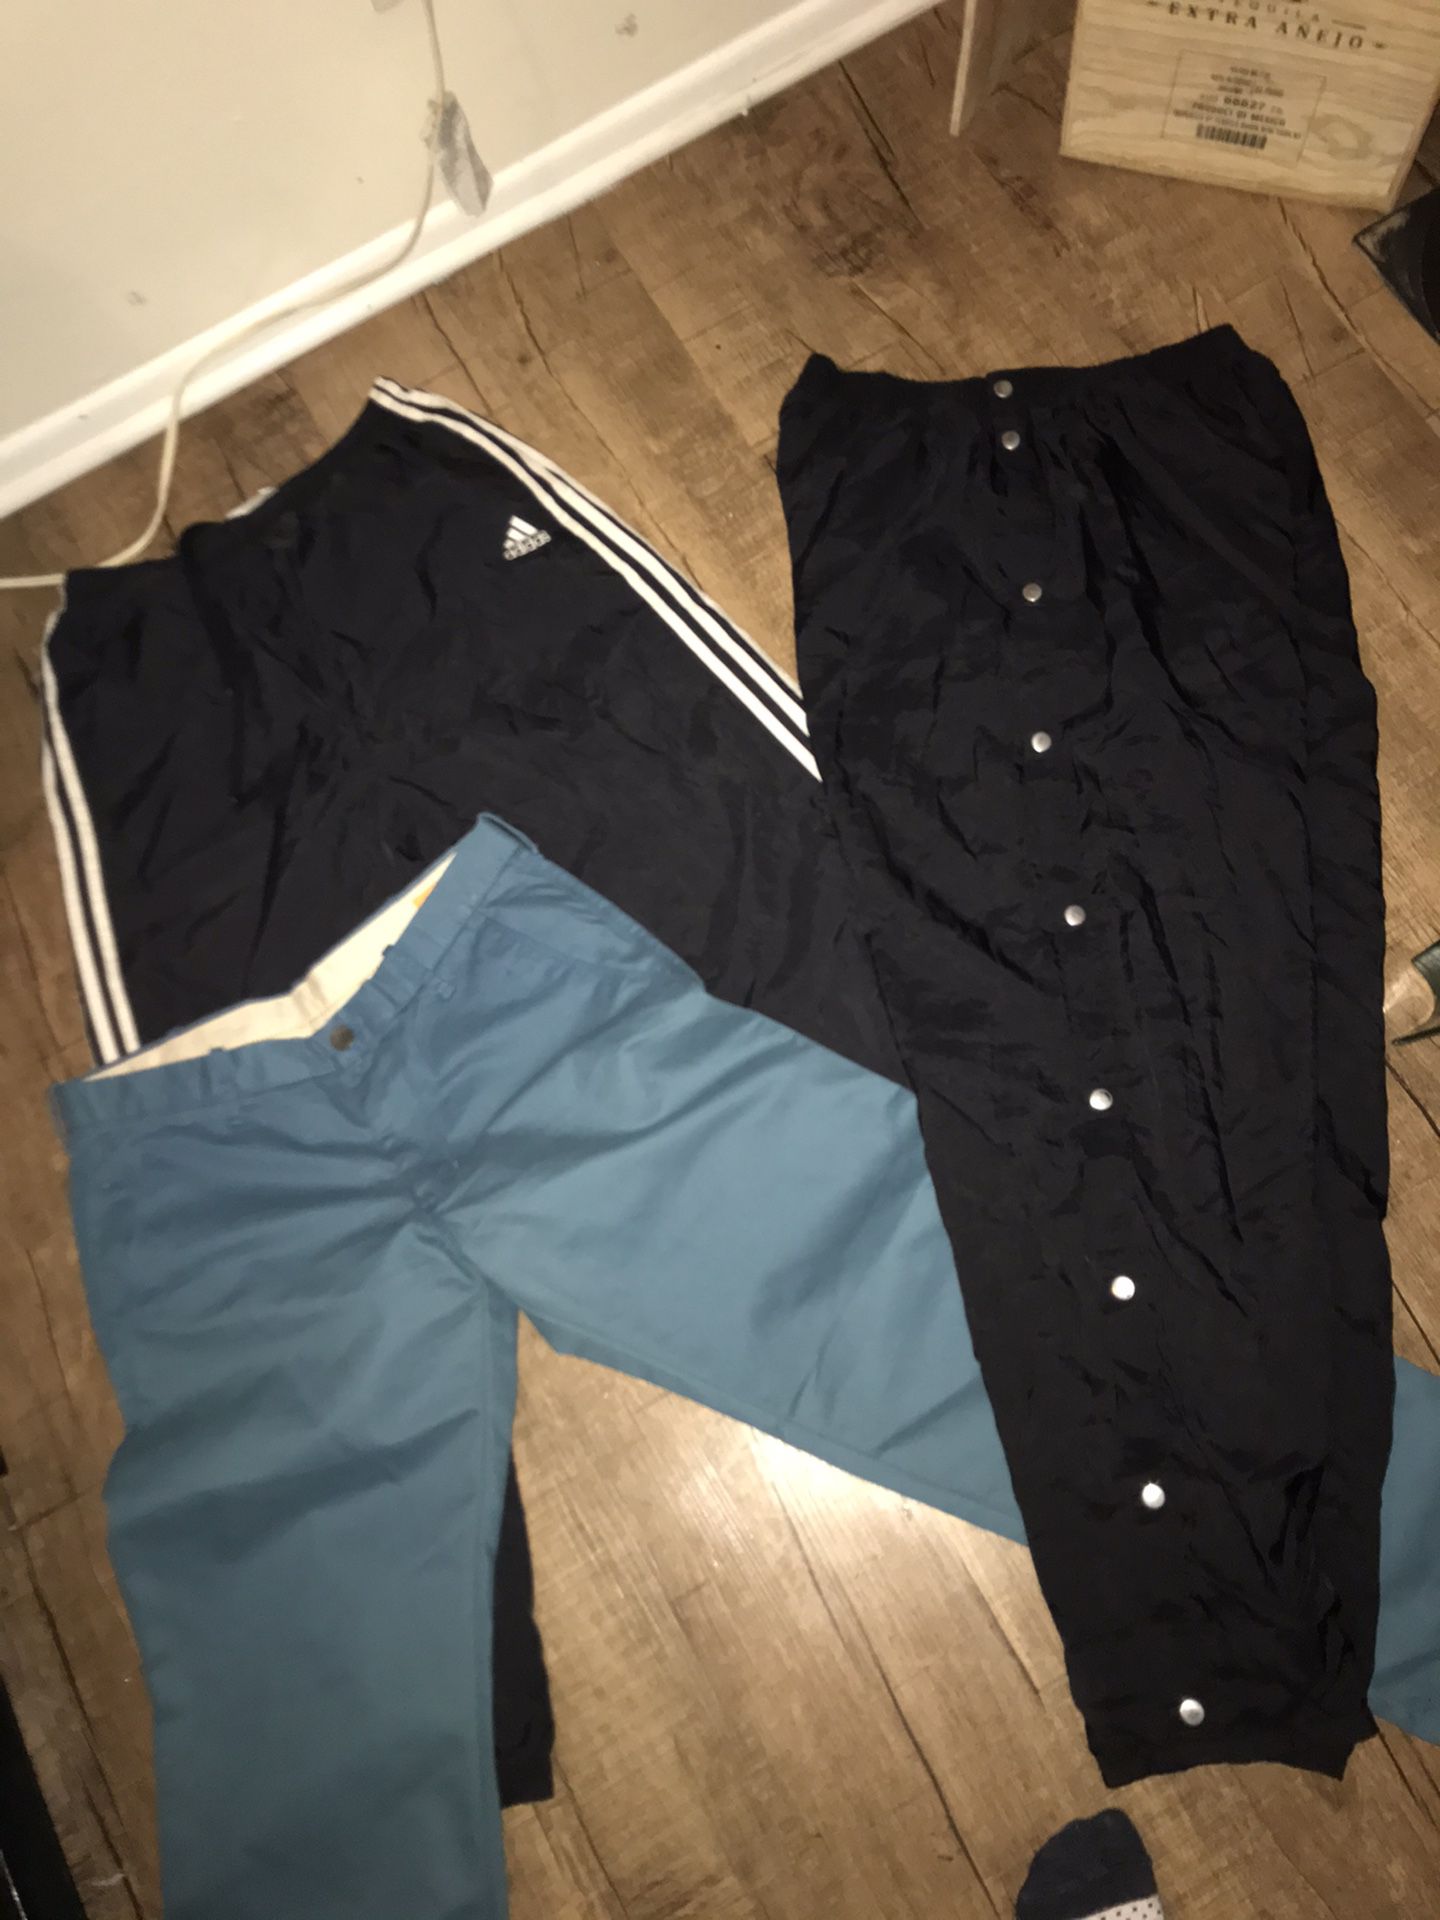 Men’s Size Large Pants Lot $5